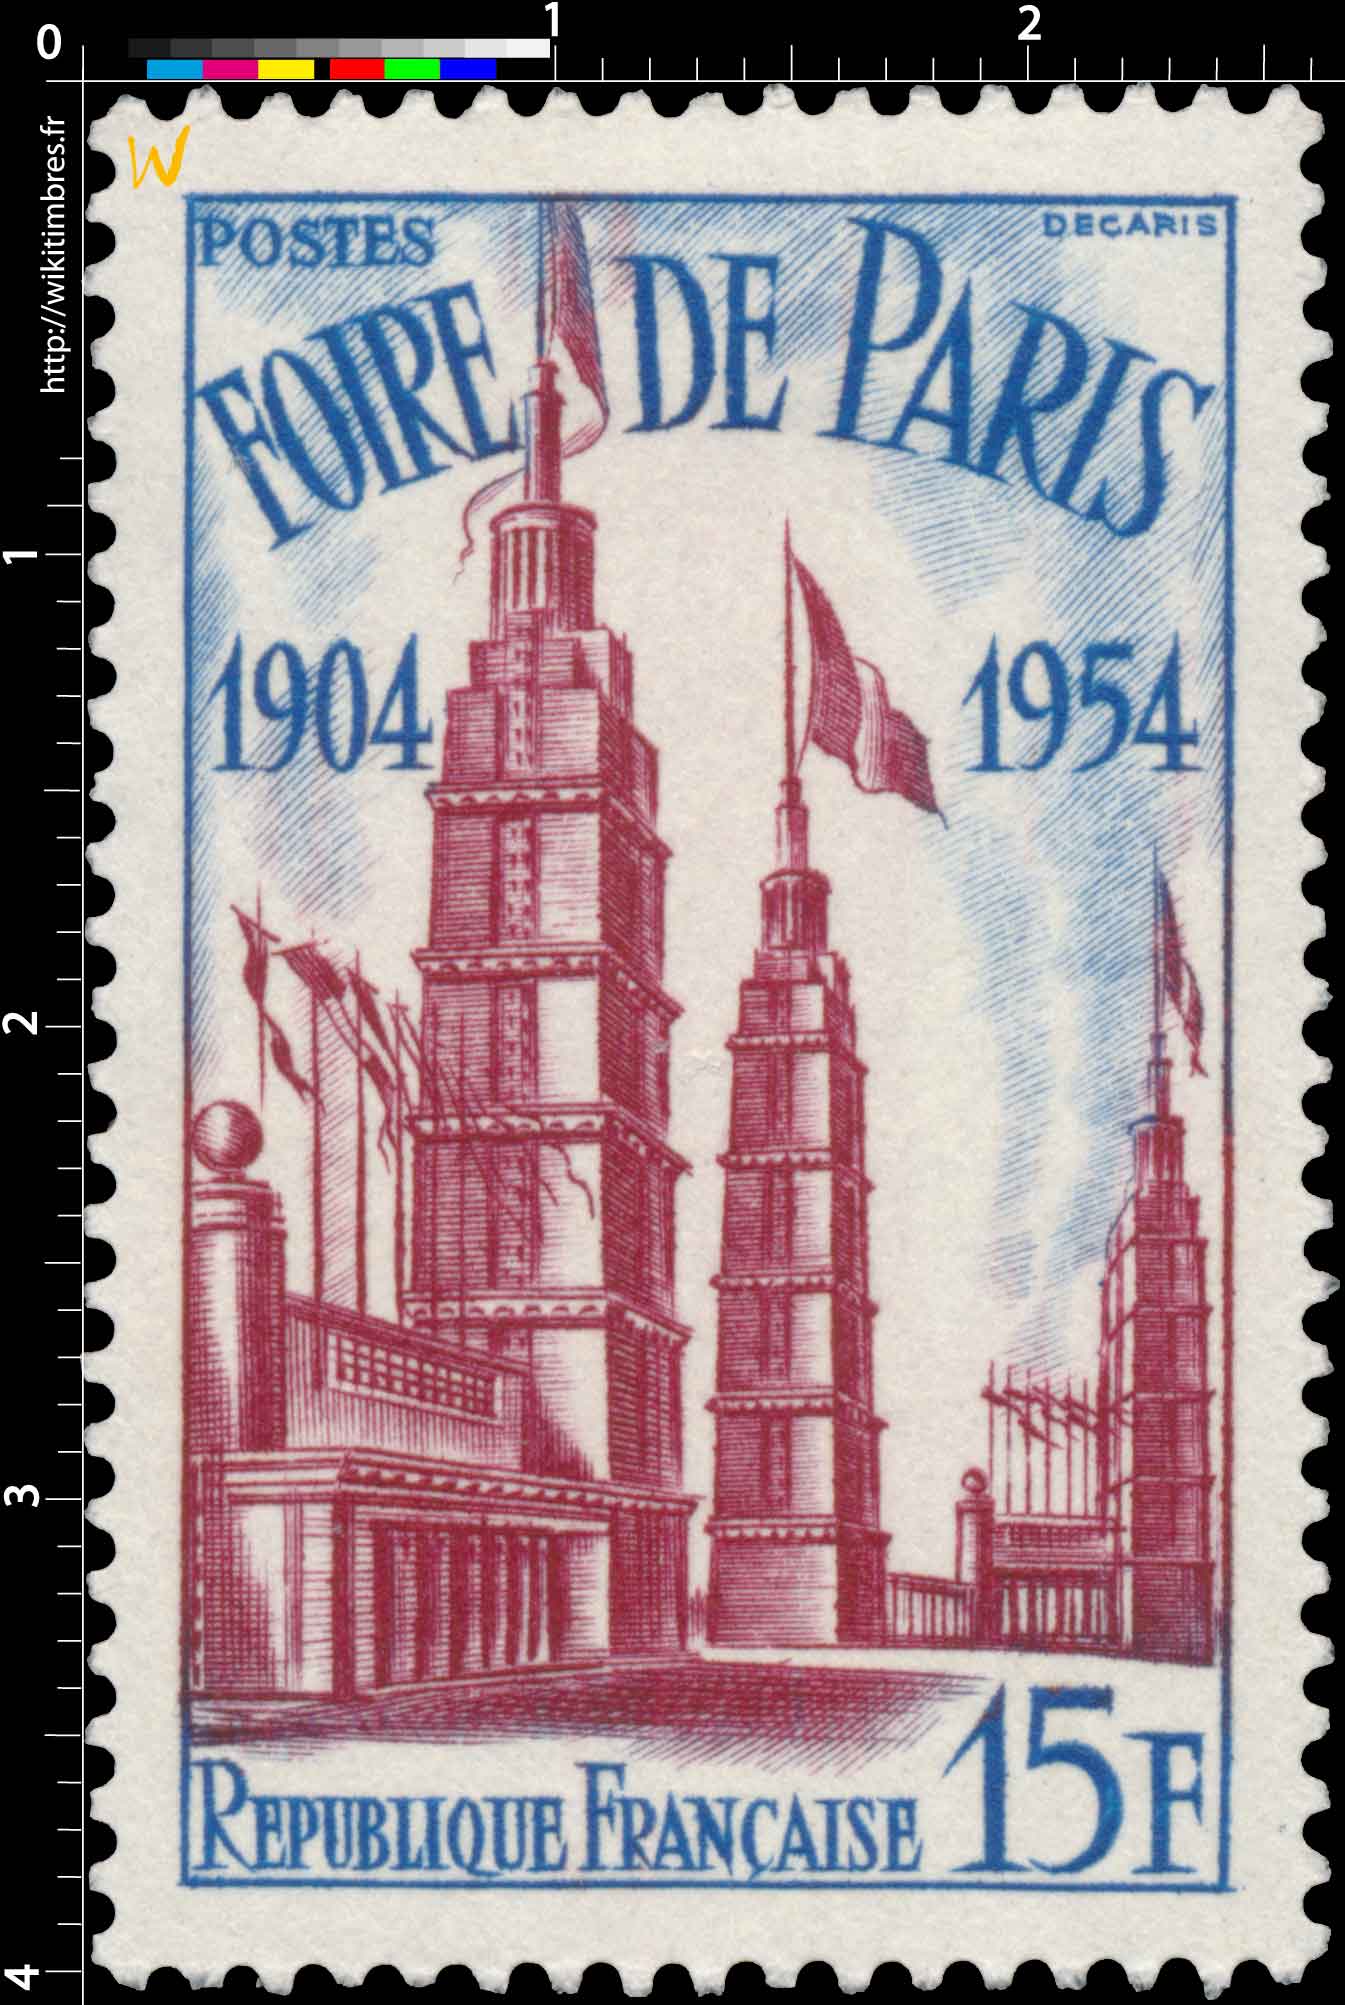 FOIRE DE PARIS 1904-1954